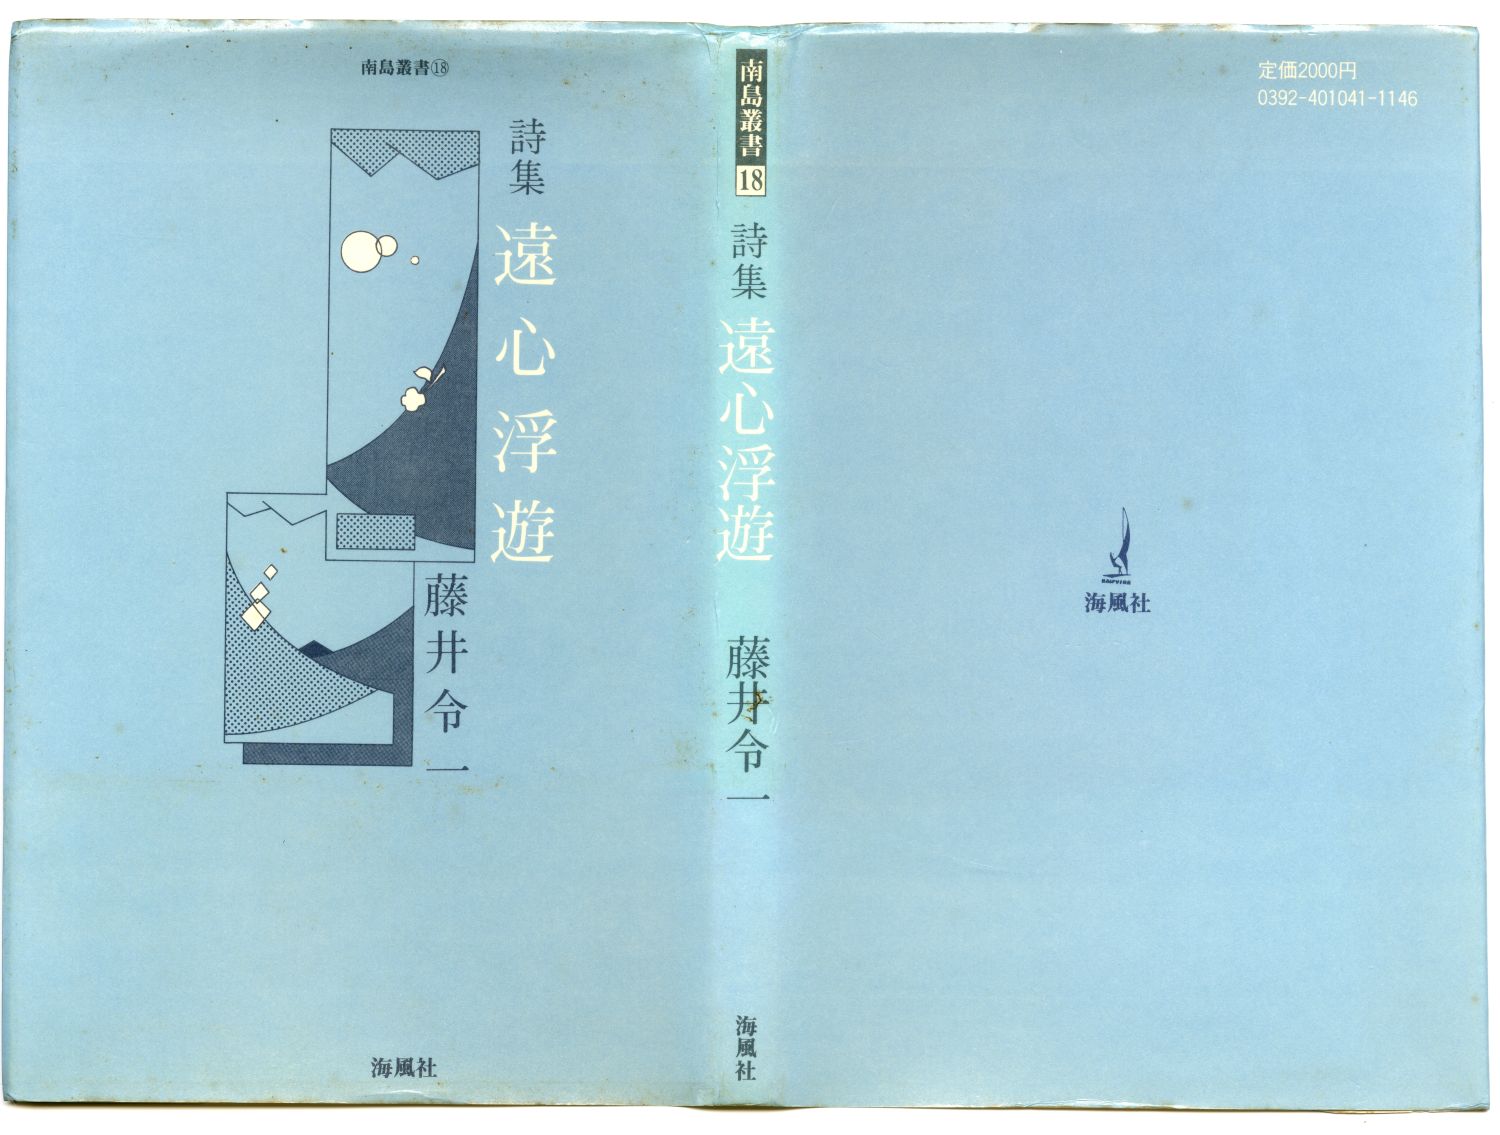 藤井令一『遠心浮遊』（1984年、海風社）カヴァー02